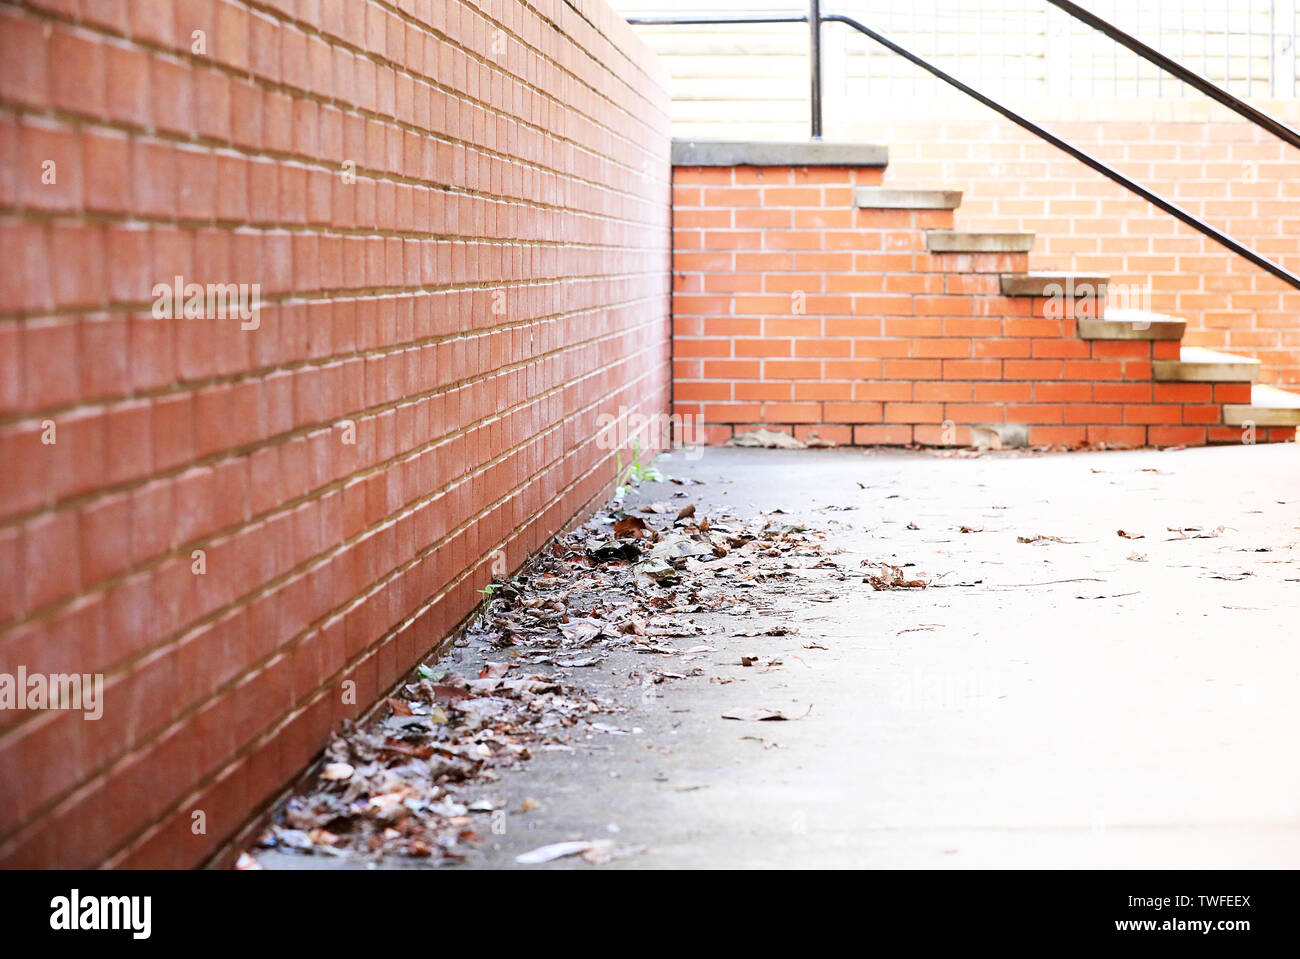 Scène de rue d'un coin d'un chemin avec sécher les feuilles d'automne. Perspective profonde avec mur de brique rouge et béton. Pas d'escalier à l'arrière. concept urbain. Banque D'Images